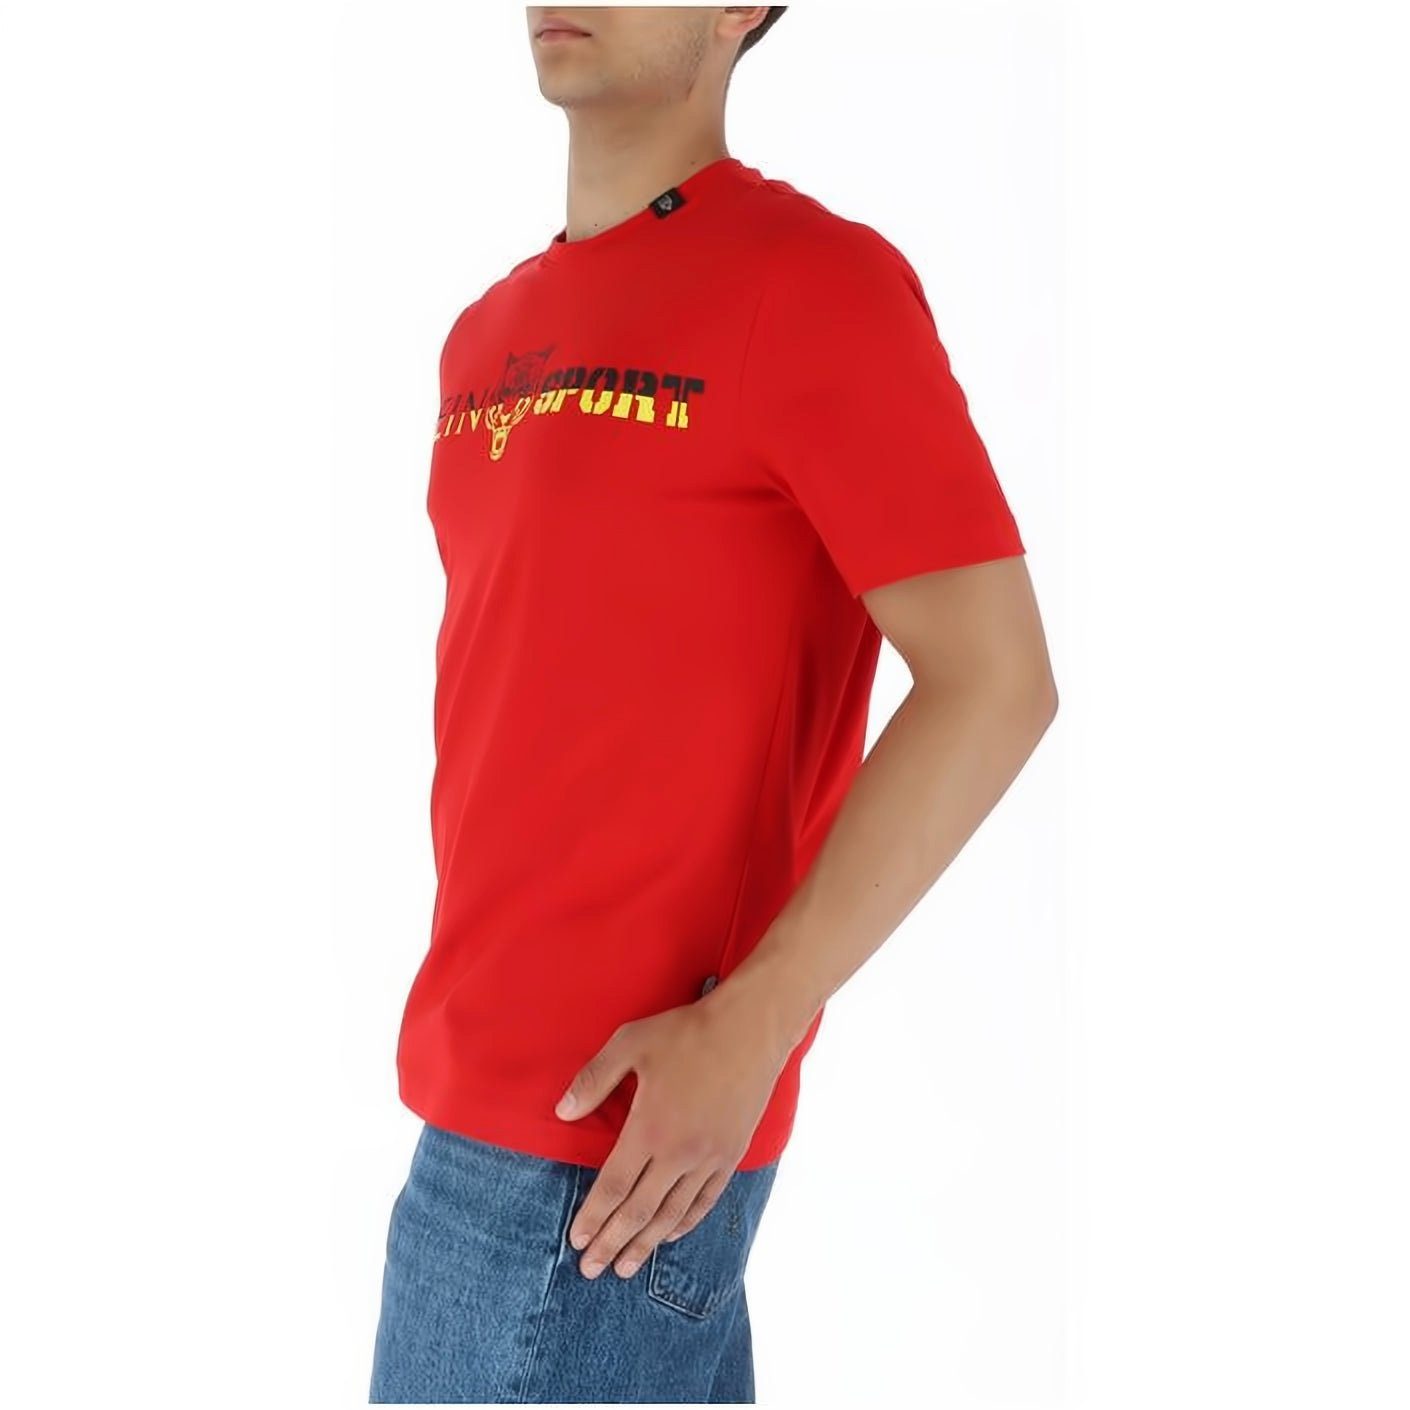 PLEIN SPORT T-Shirt ROUND Look, vielfältige Tragekomfort, Farbauswahl NECK hoher Stylischer